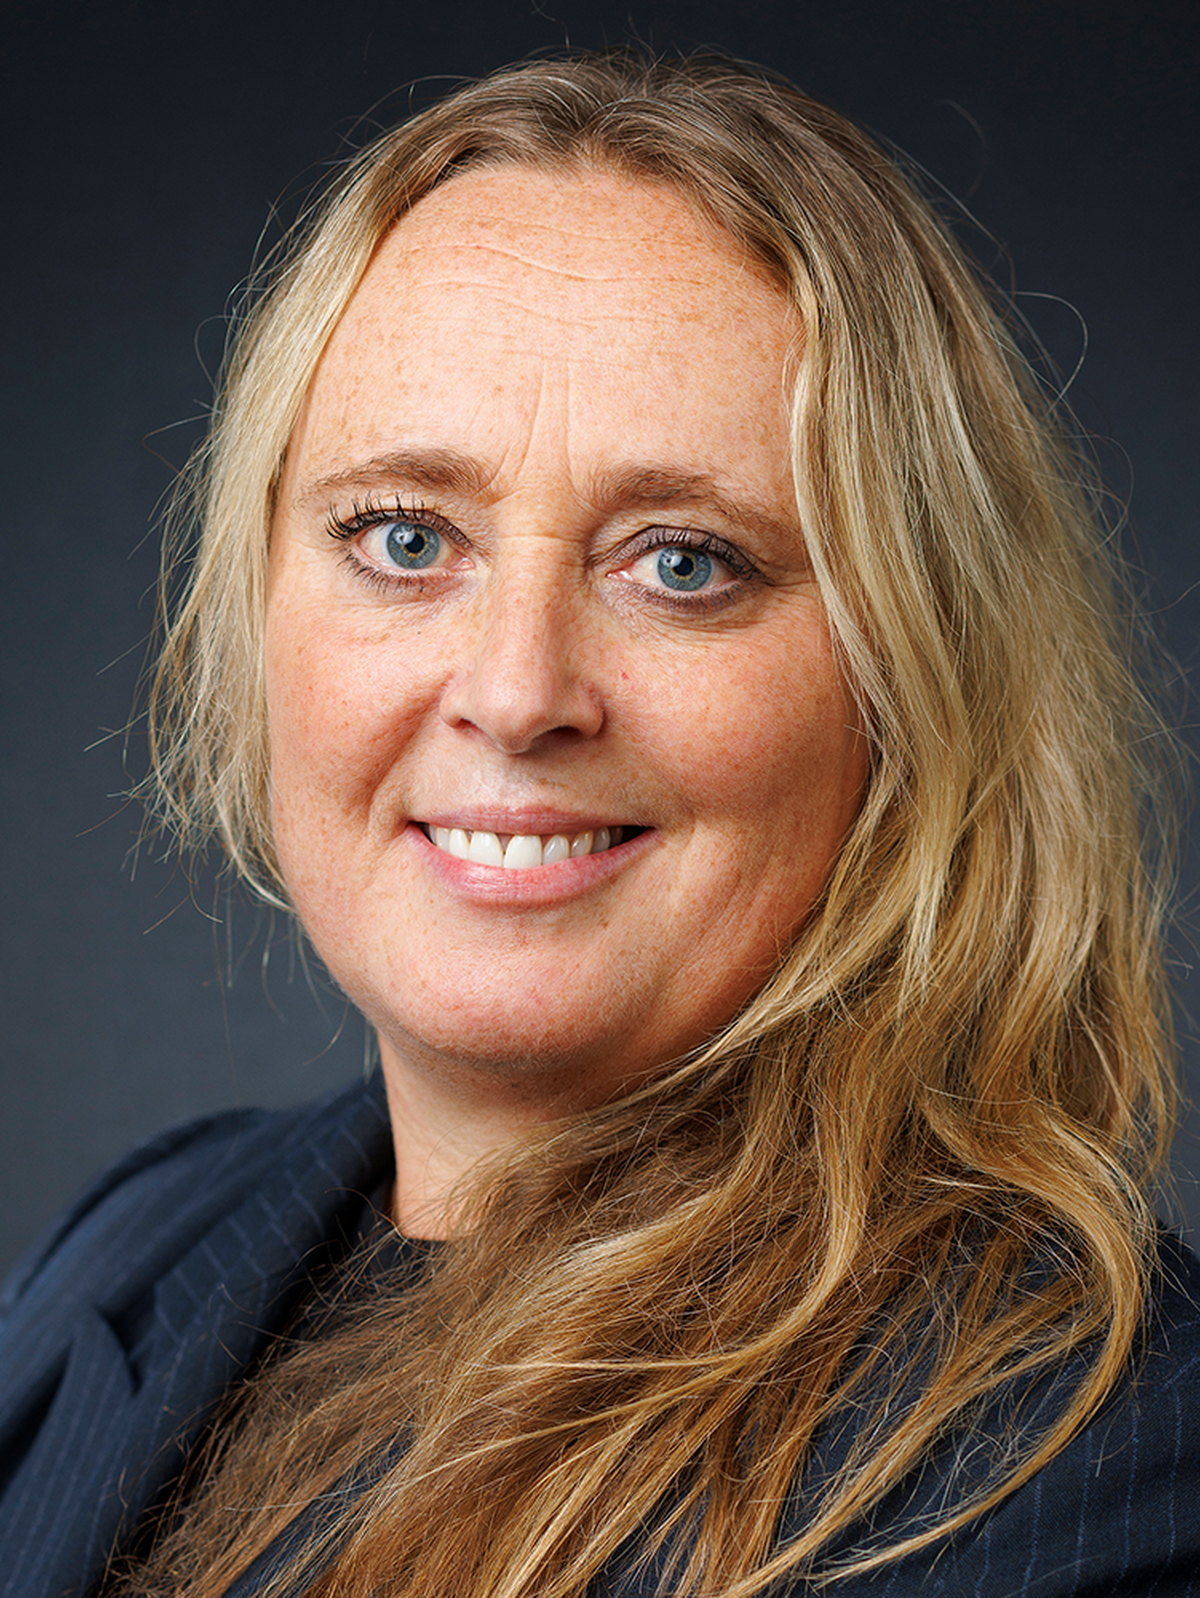 Liv Jorunn Hallerud, Senior Advisor at Kobler